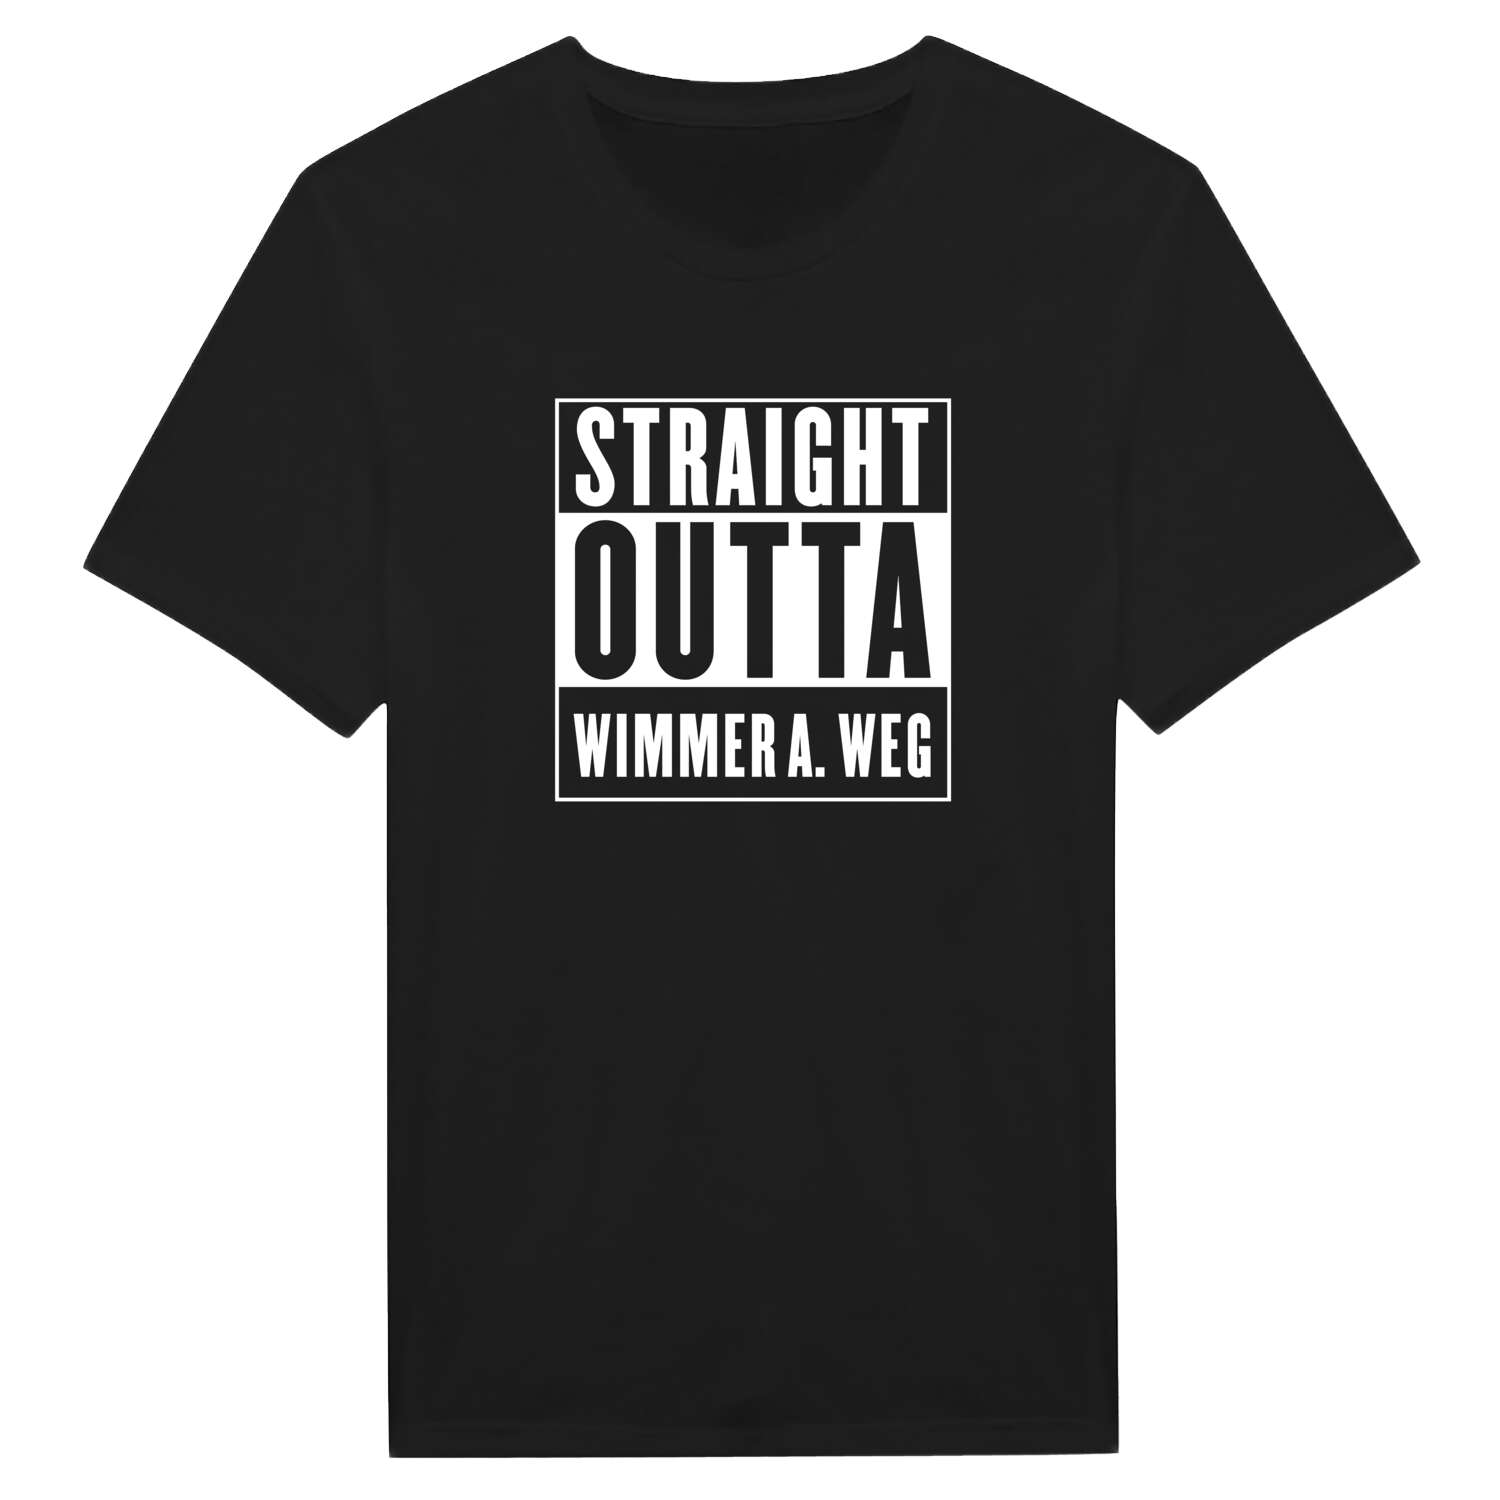 Wimmer a. Weg T-Shirt »Straight Outta«